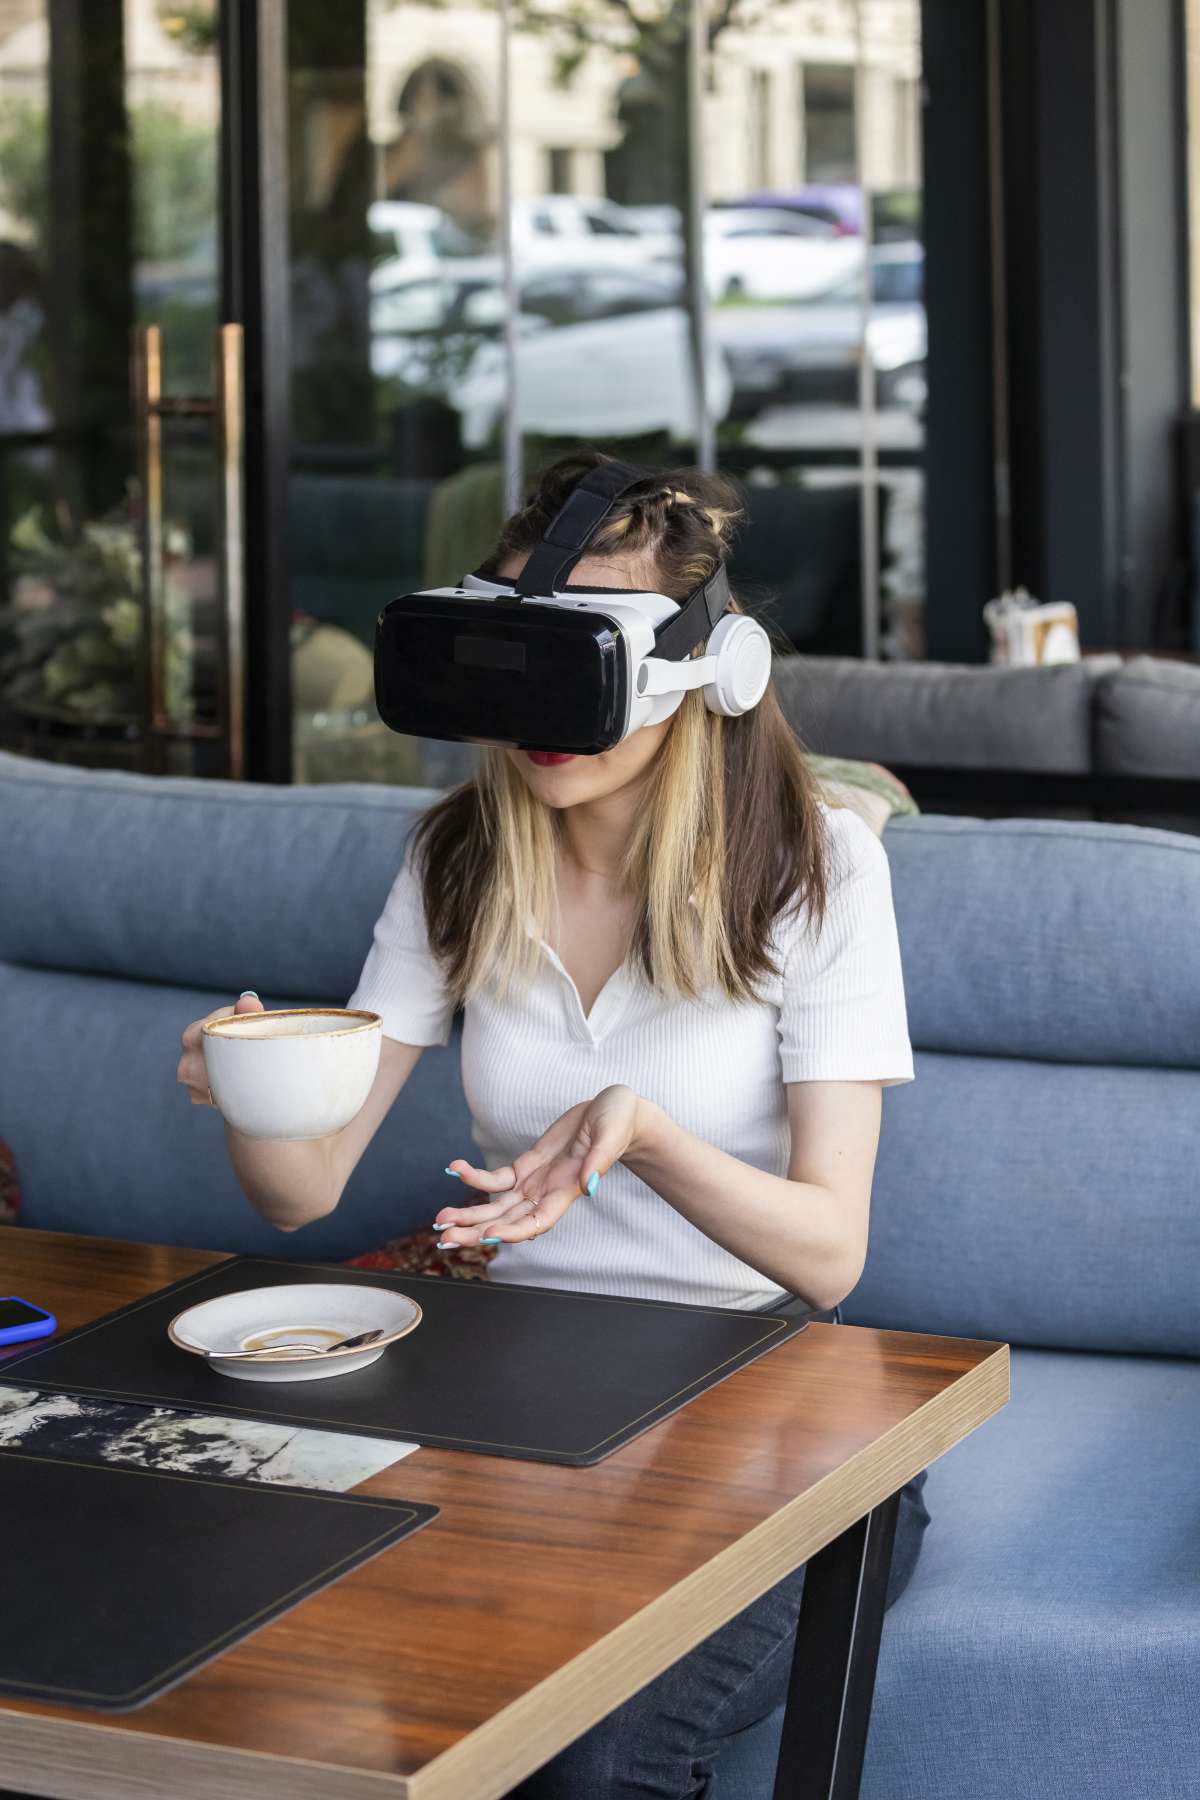 Virtual dining experiences